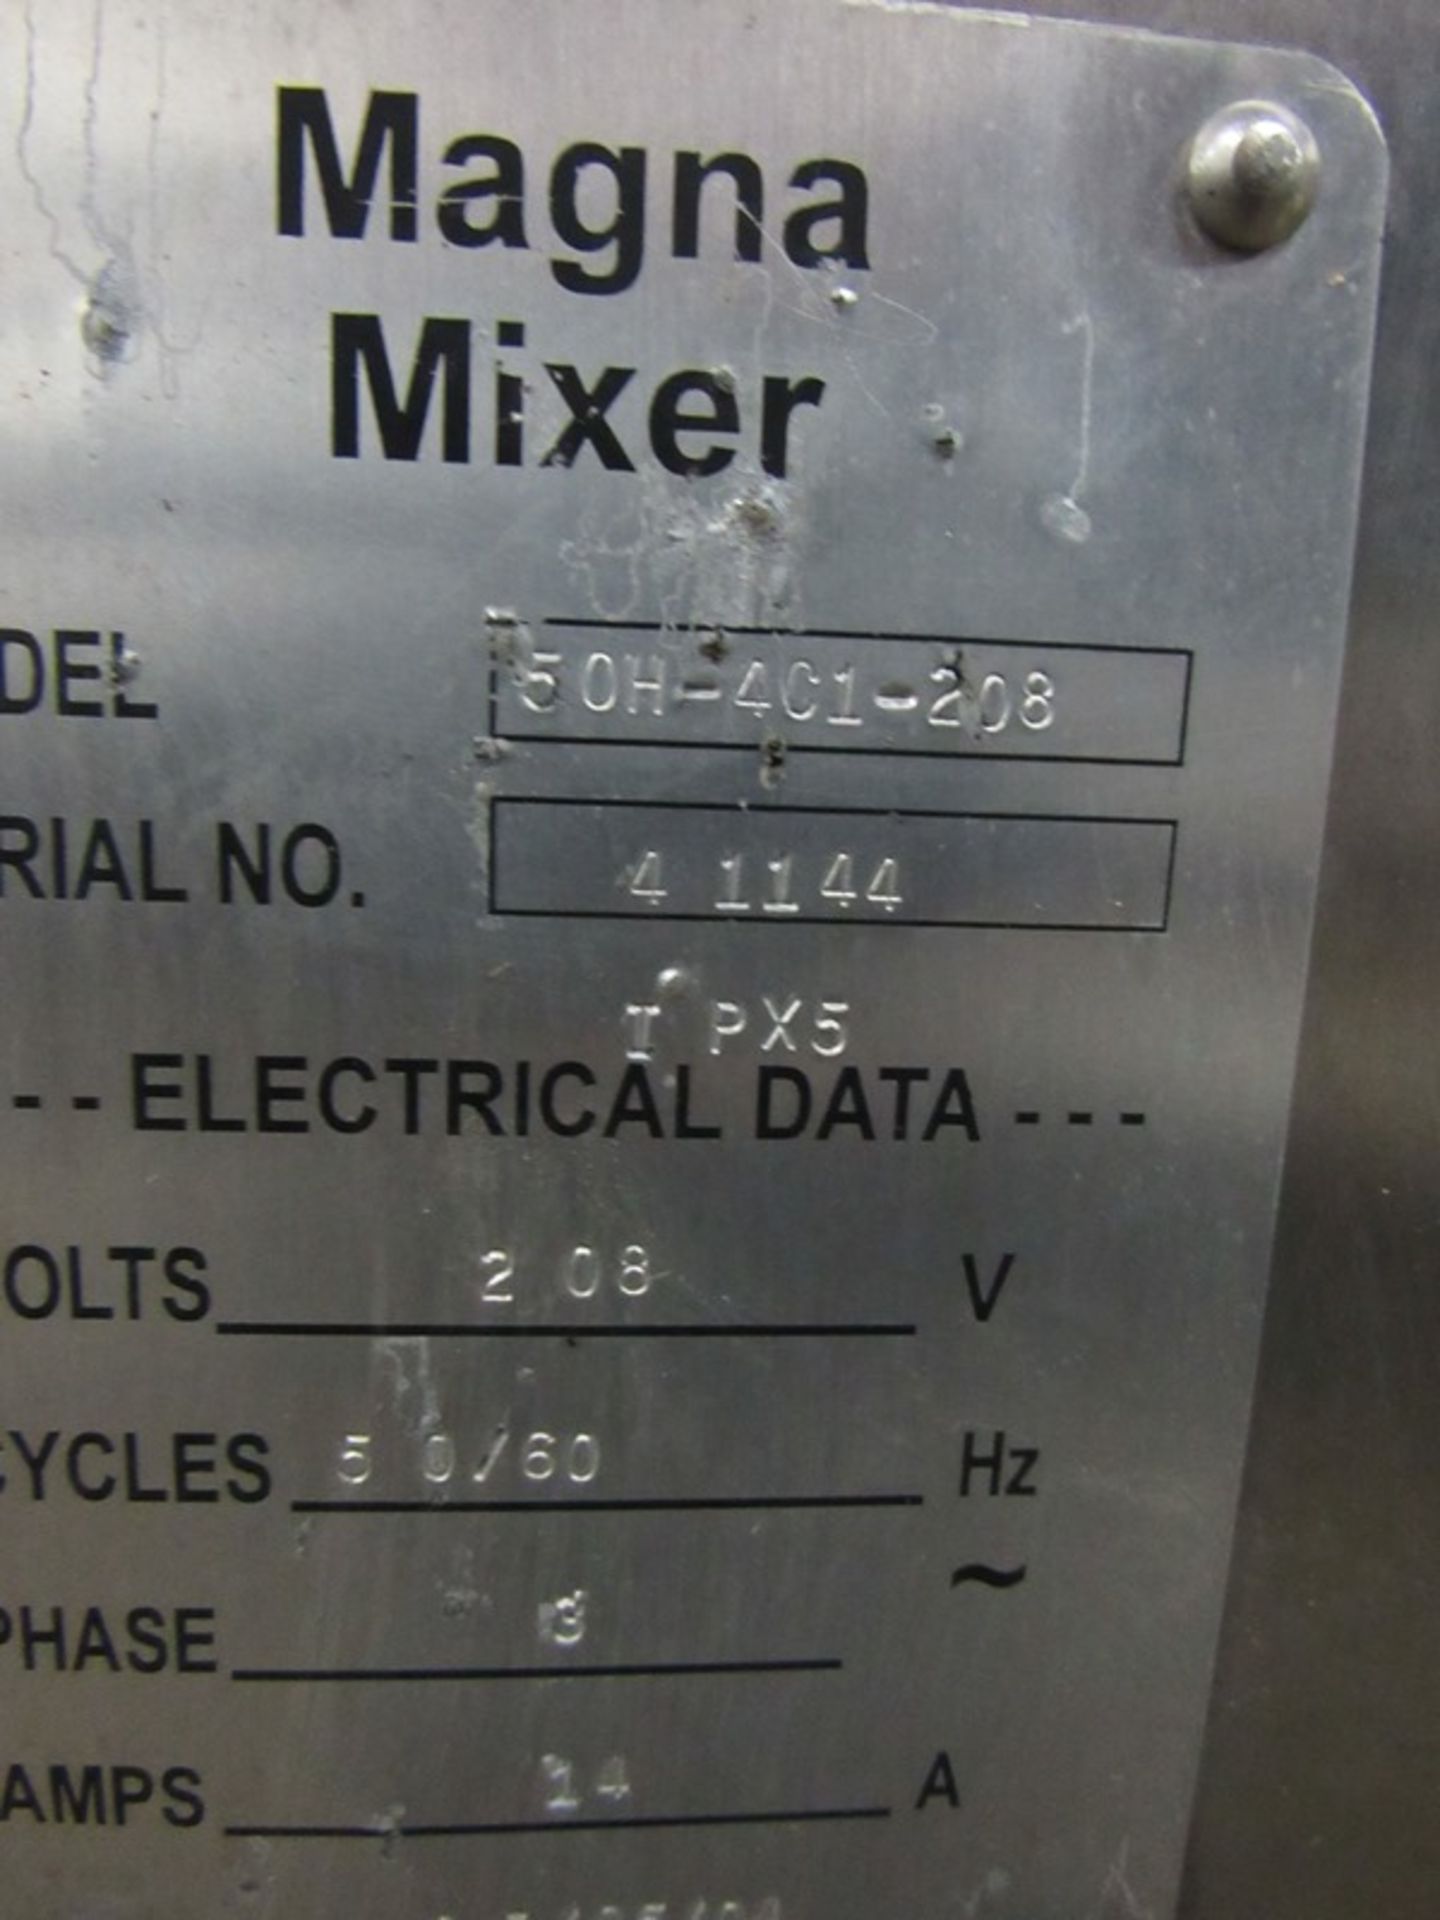 Magna Mixer Mdl 50H-401-208 3 Bar Dough Mixer, mf. 2005, 18" L X 22 1/2" W X 26" D. 3 mix speeds, - Image 4 of 4